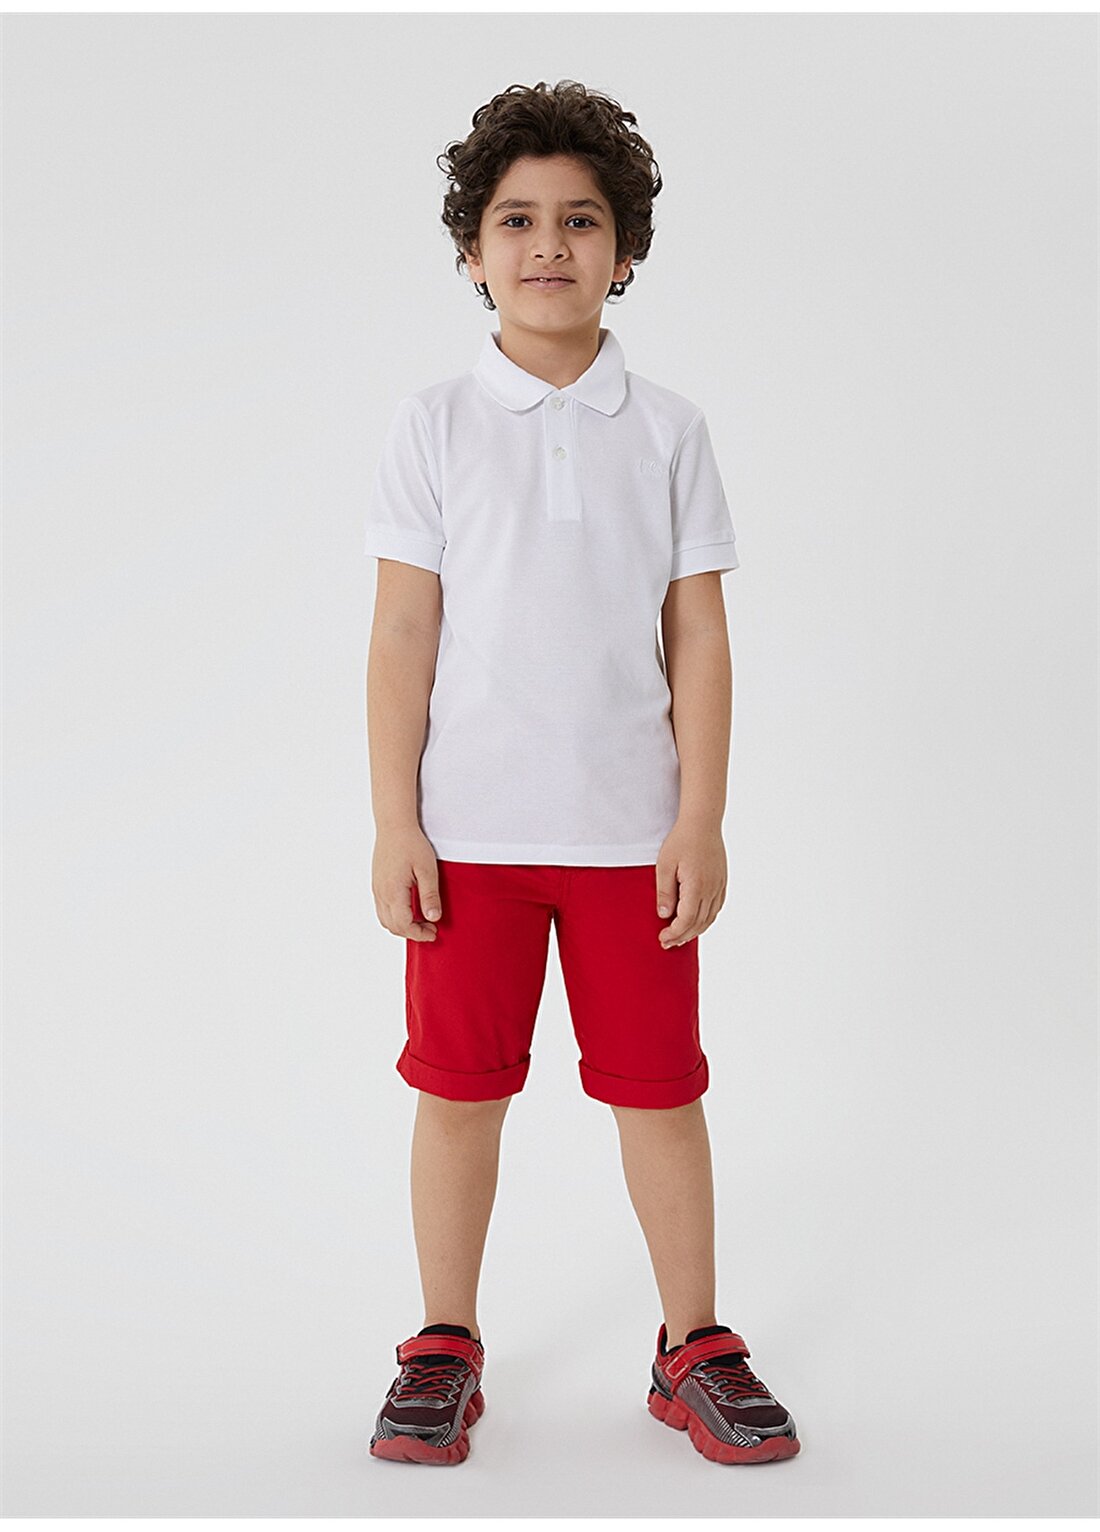 Lee Cooper Pike Beyaz Erkek Çocuk Polo T-Shirt 212 LCB 242004 TWINS BEYAZ